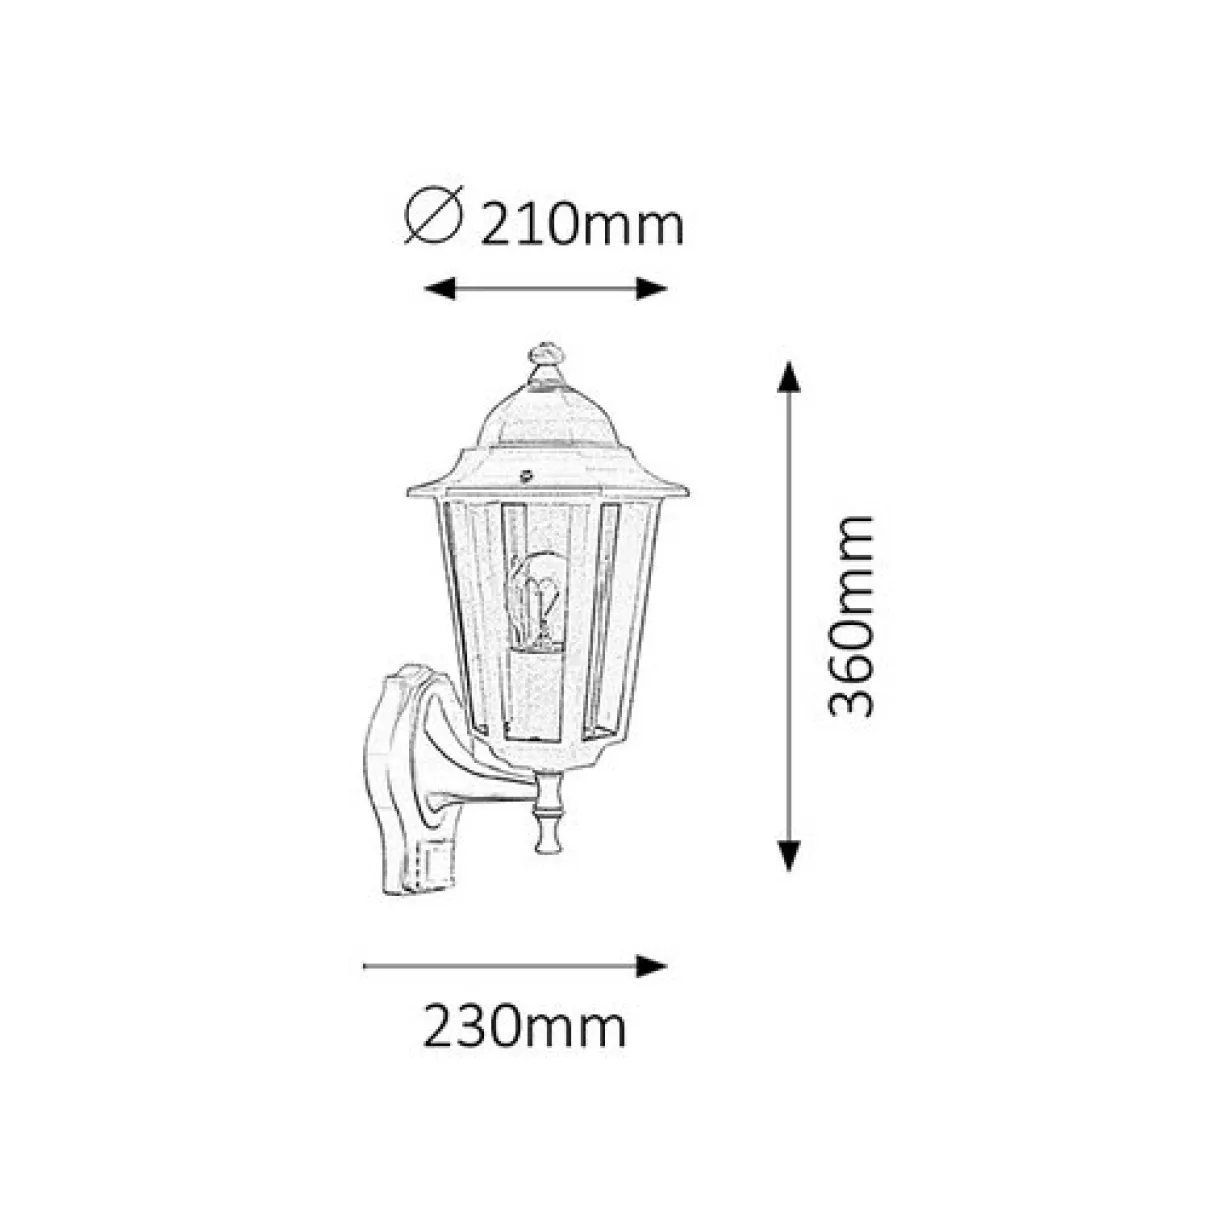 Velence Kültéri fali lámpa,210mm, E27 1x MAX 60W - Raba-8216